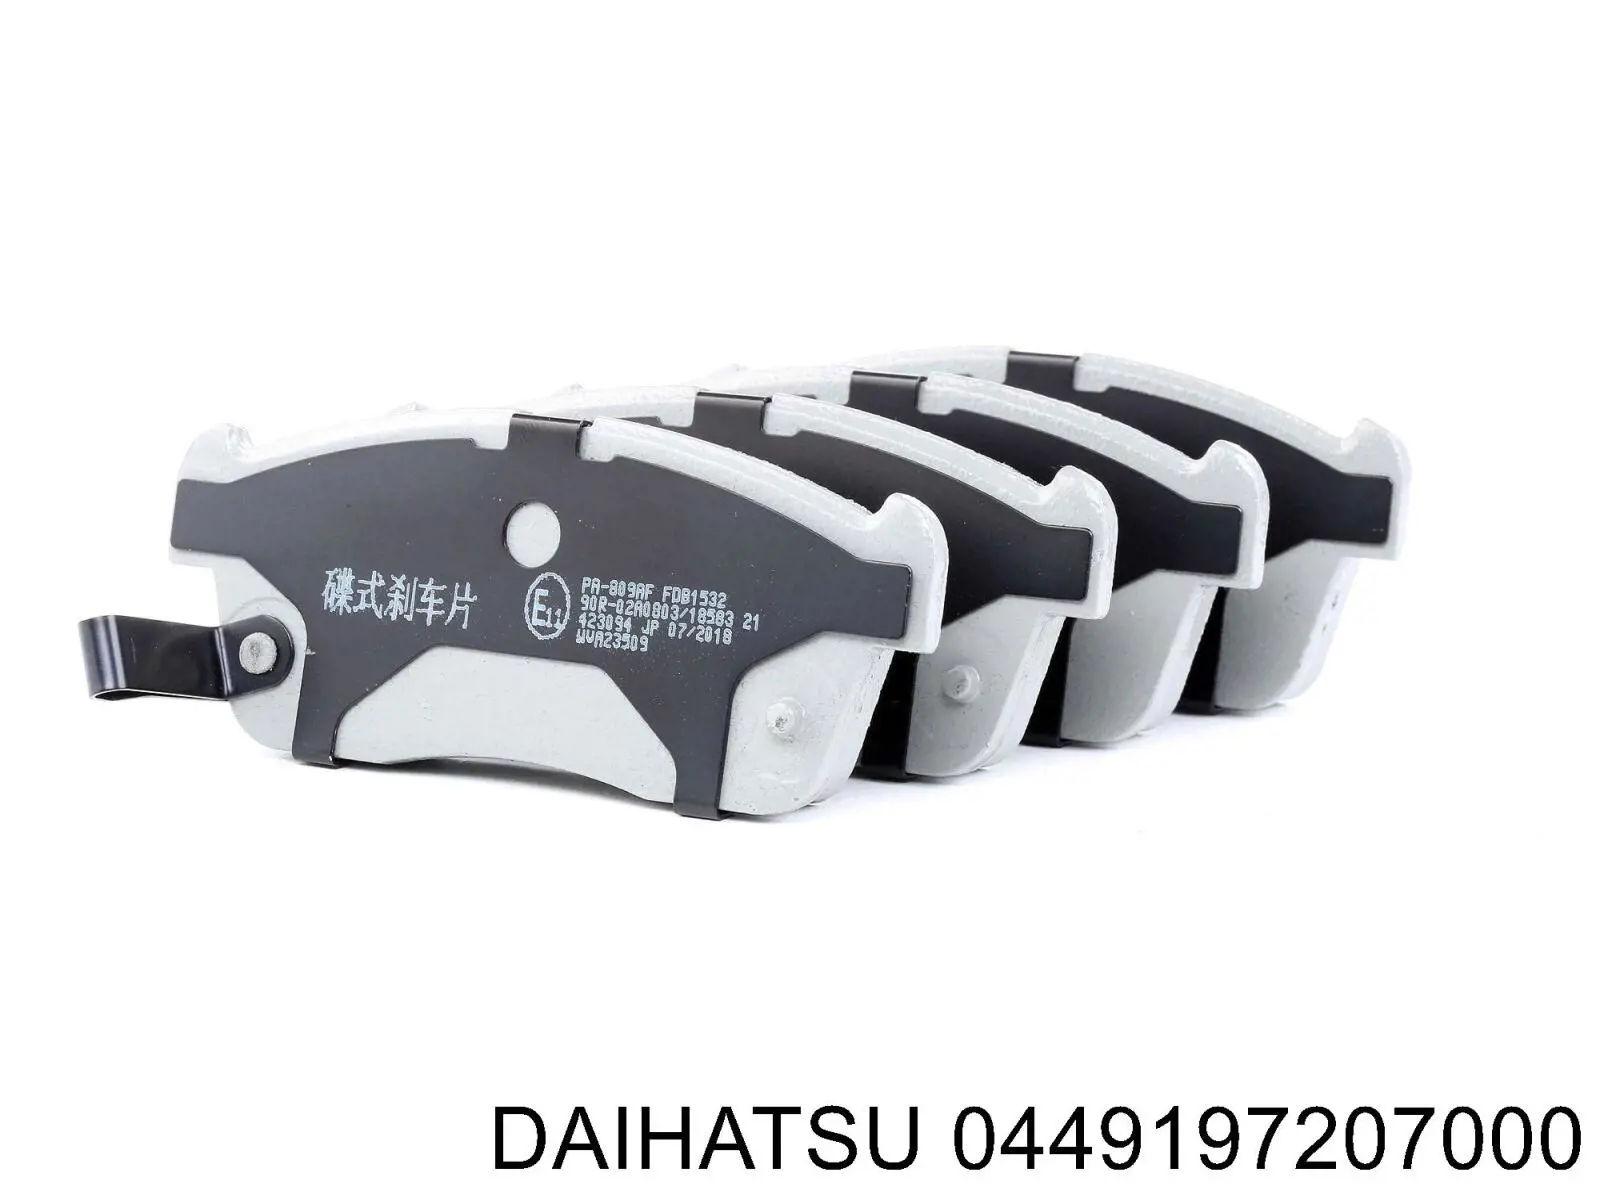 0449197207000 Daihatsu pastillas de freno delanteras